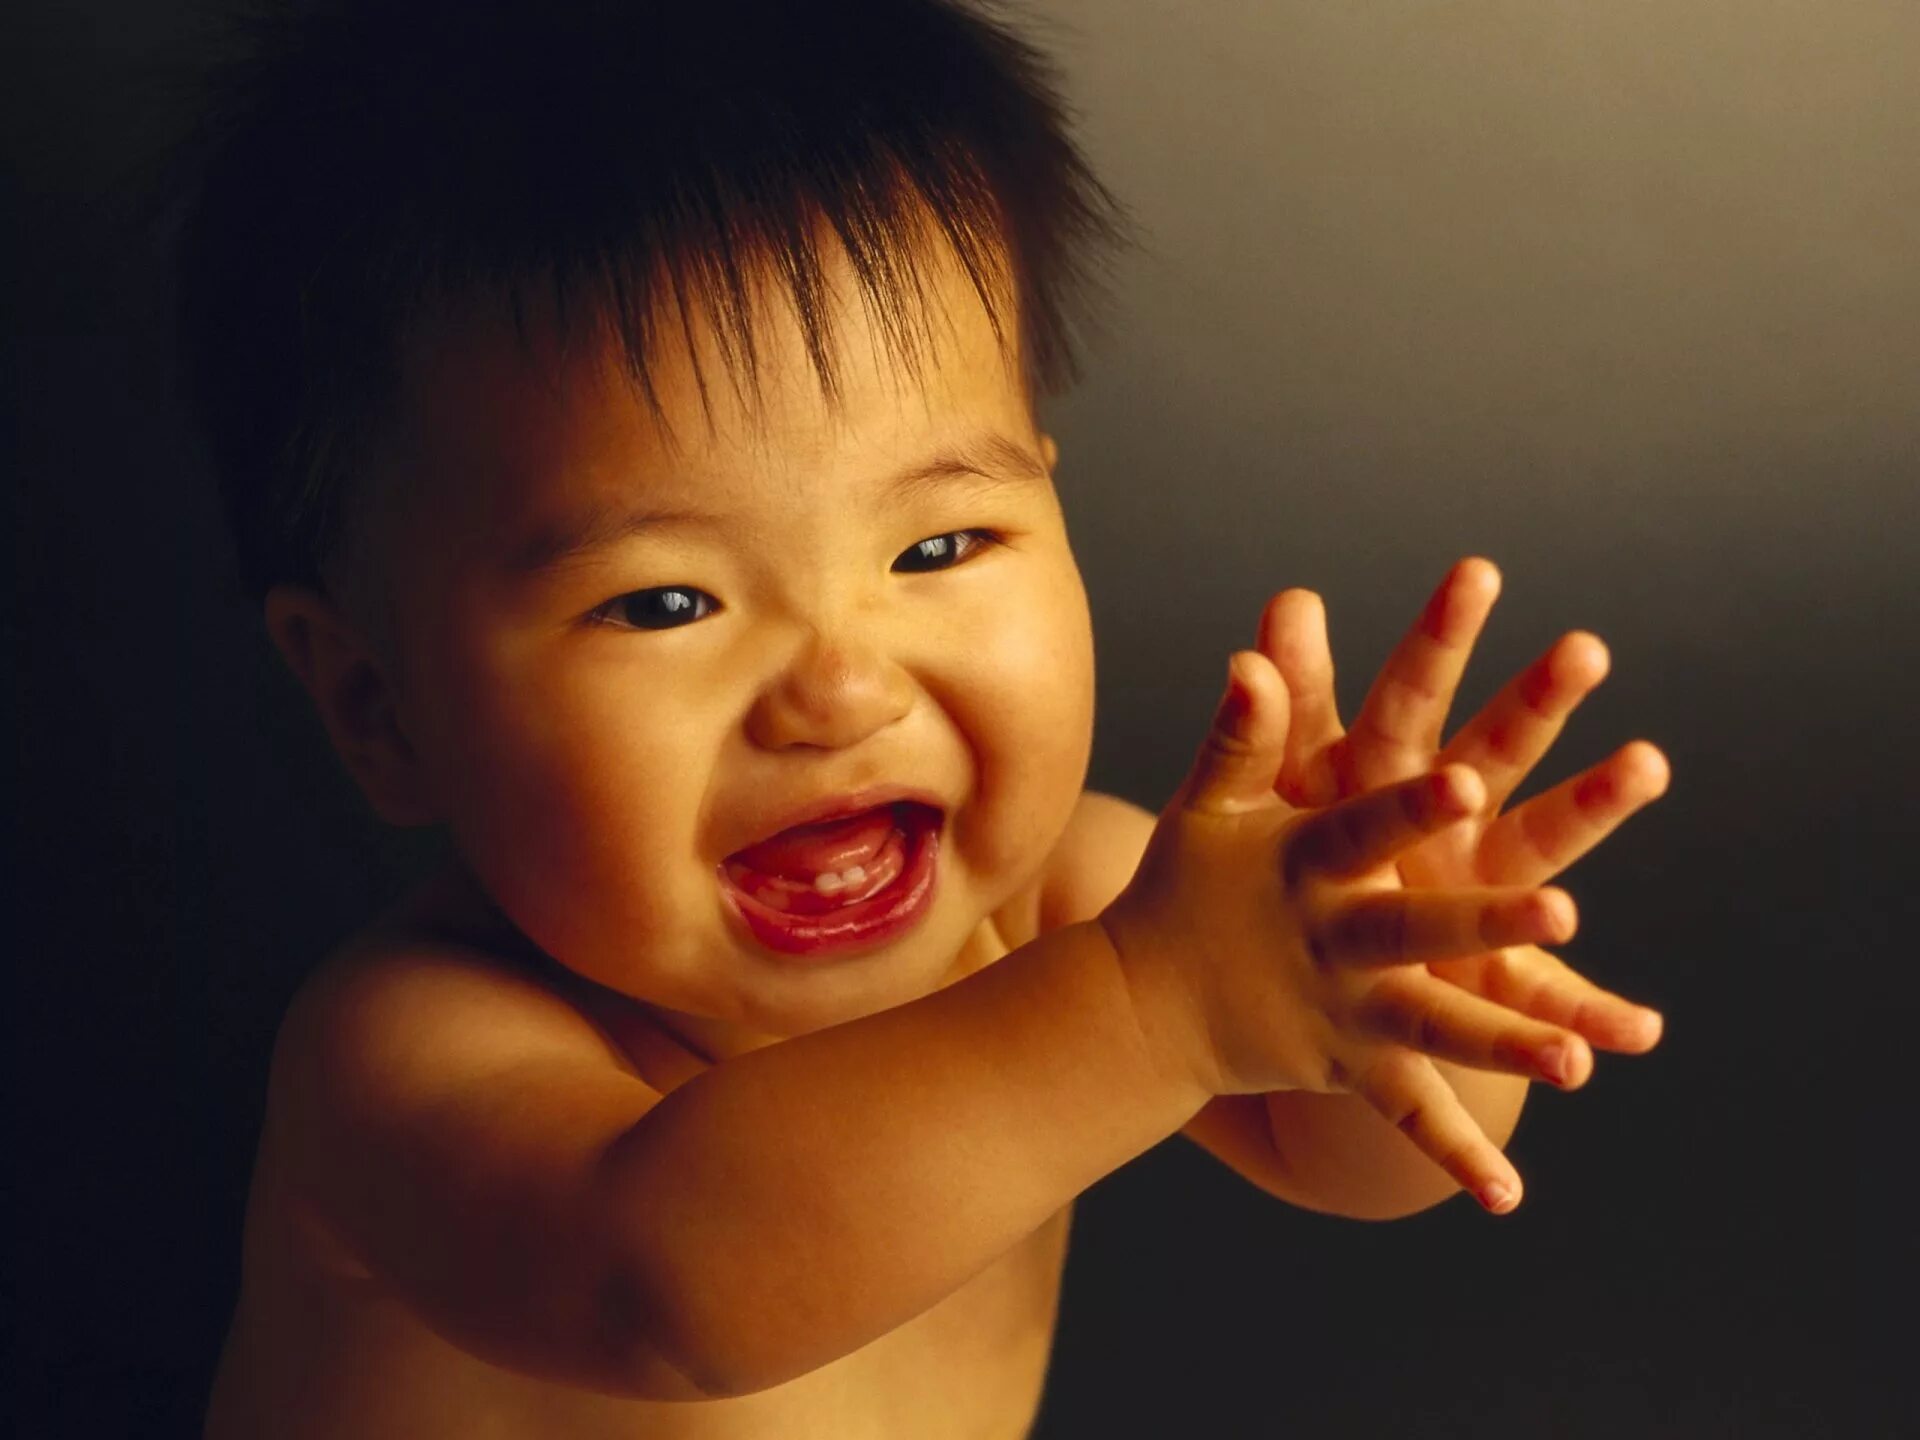 Уникальный ребенок. Ребенок. Малыш хлопает в ладоши. Ребёнок китаец улыбается. Ребенок радостный хлопает.